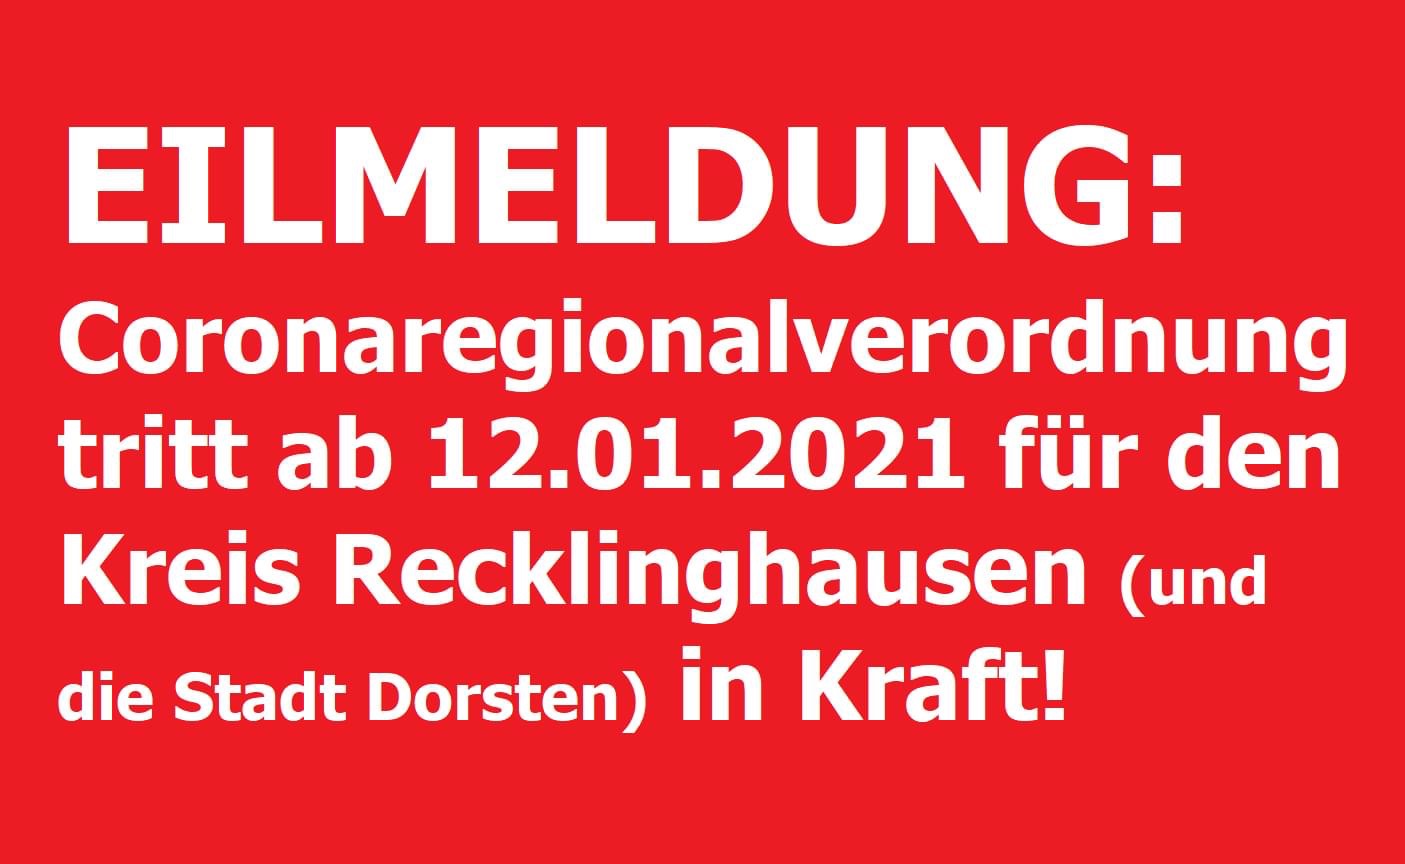 Corona-Regionalverordnung mit Bewegungs-Einschränkungen für den Kreis Recklinghausen ab Dienstag (12.01.2021)